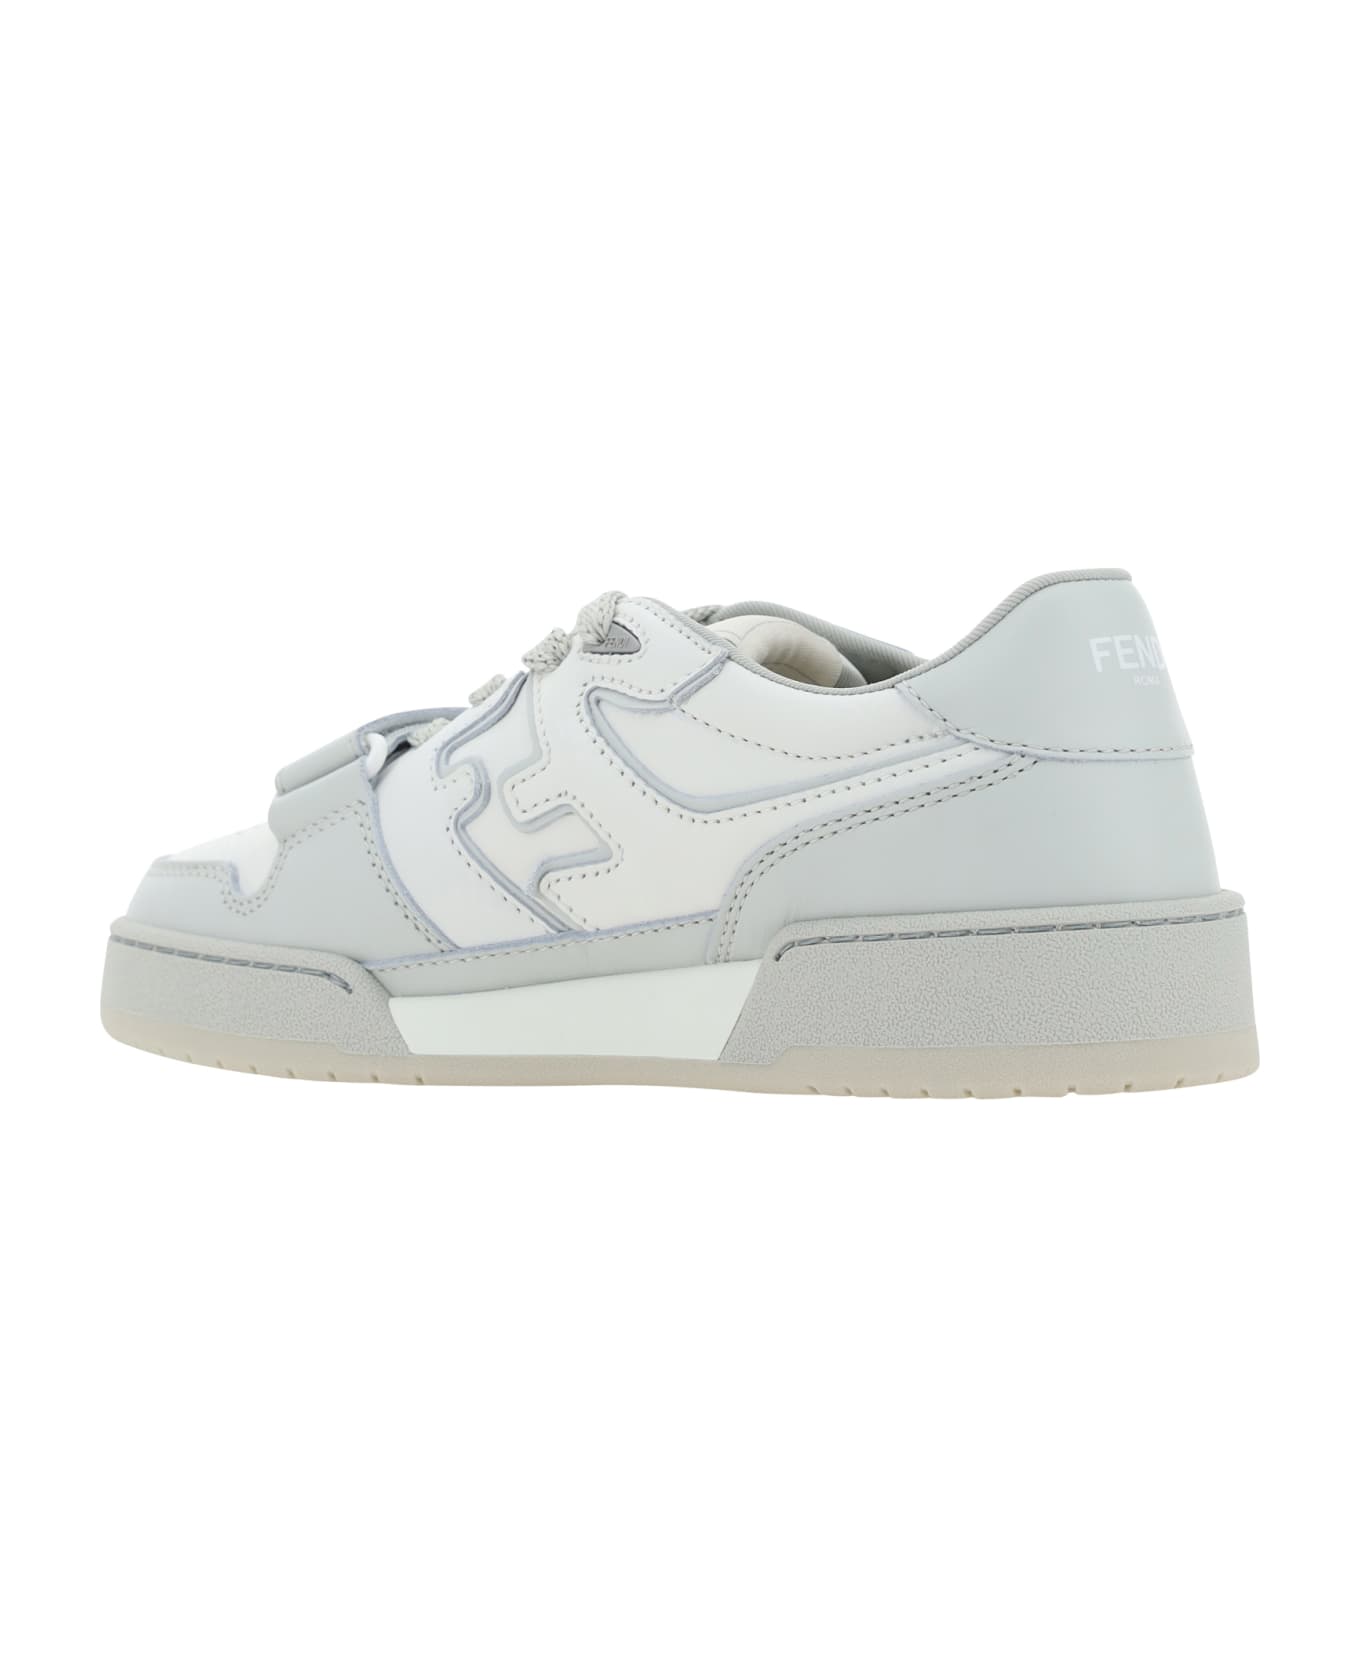 Fendi Match Sneakers - Grigio/white/grigio スニーカー